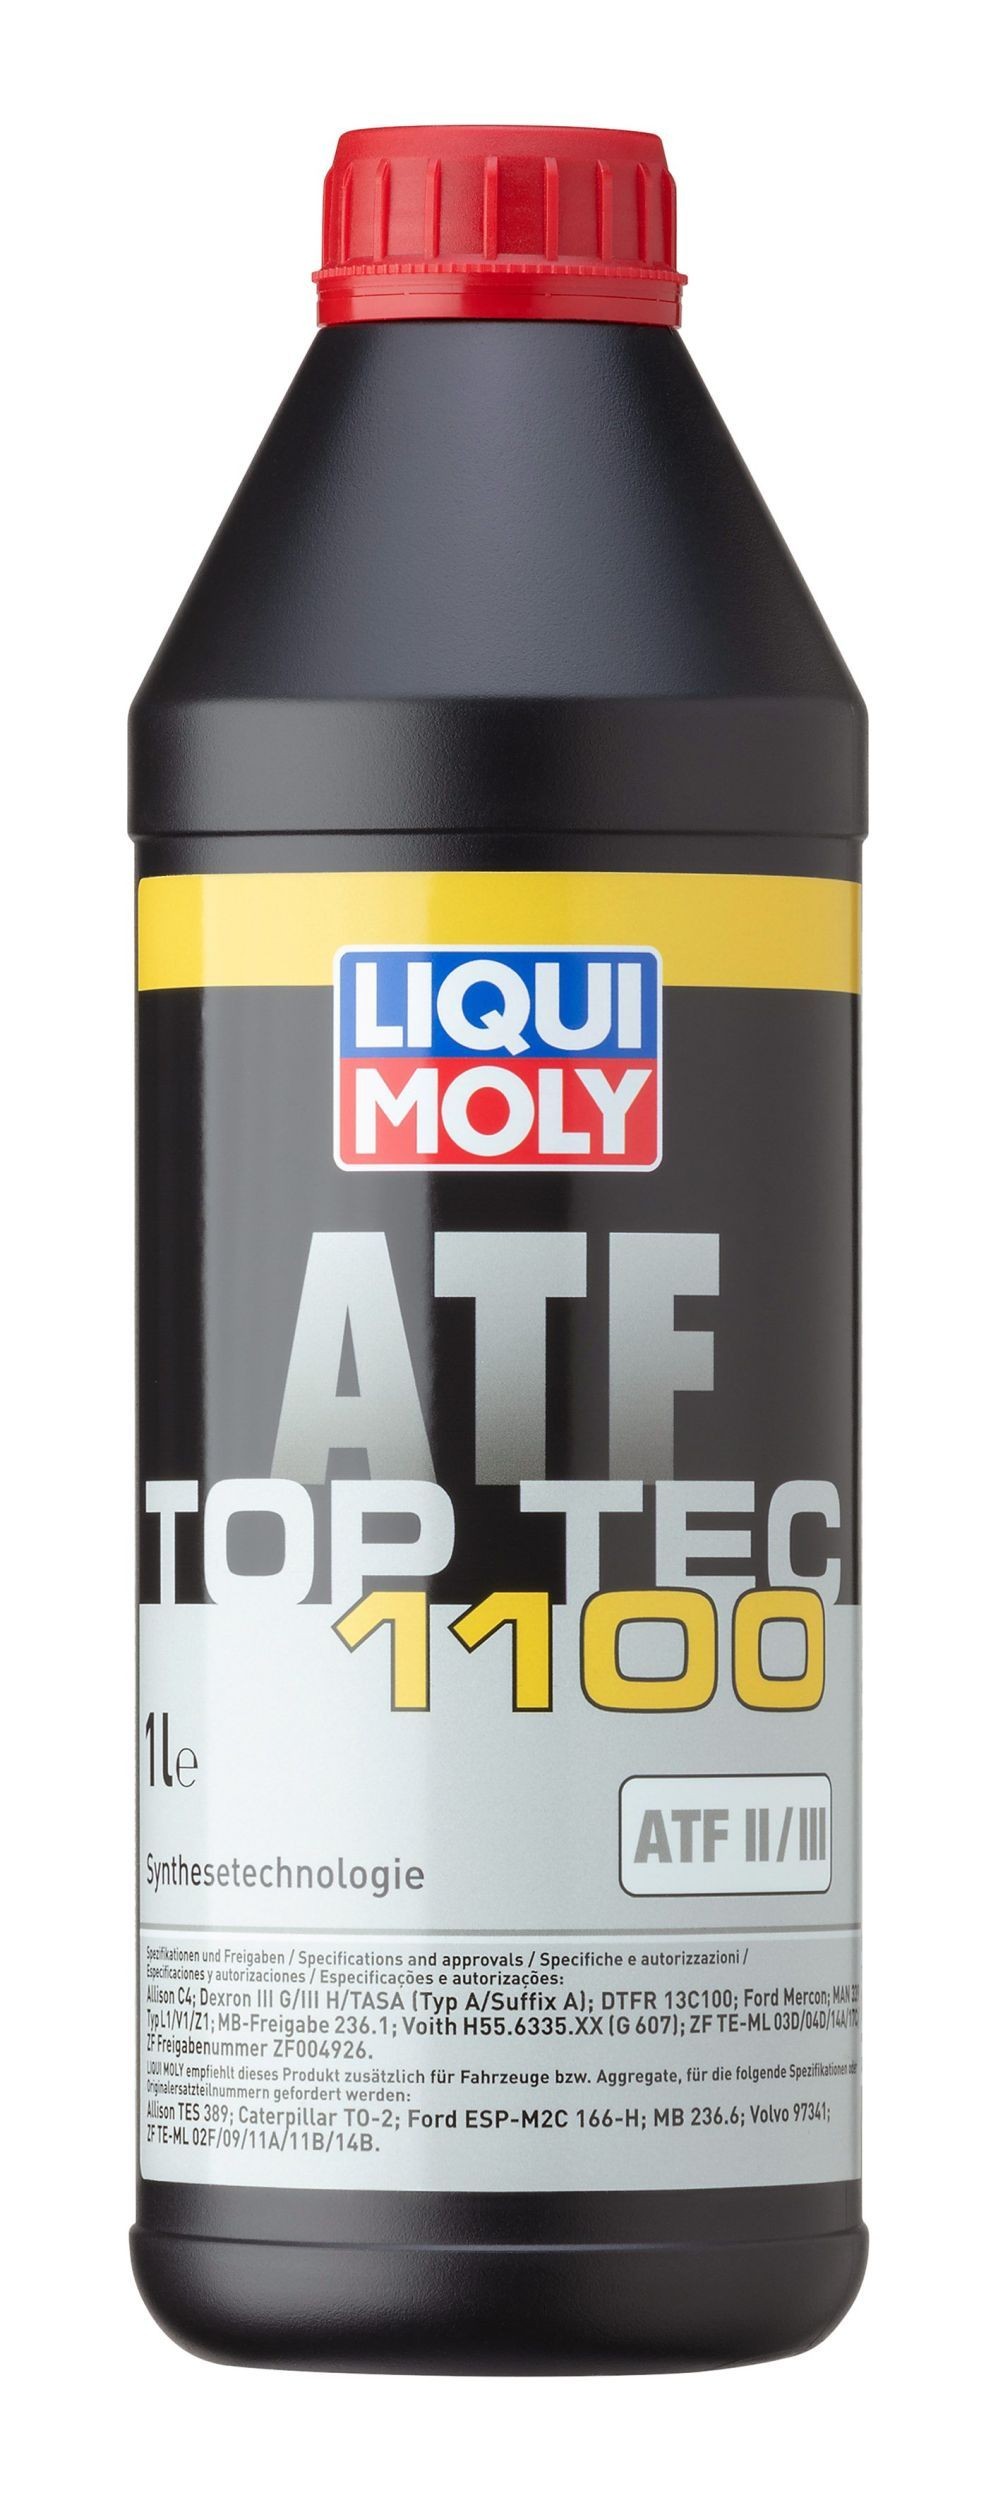 LIQUI MOLY Top Tec ATF, 1100 Automātiskās pārnesumkārbas eļļa 3651